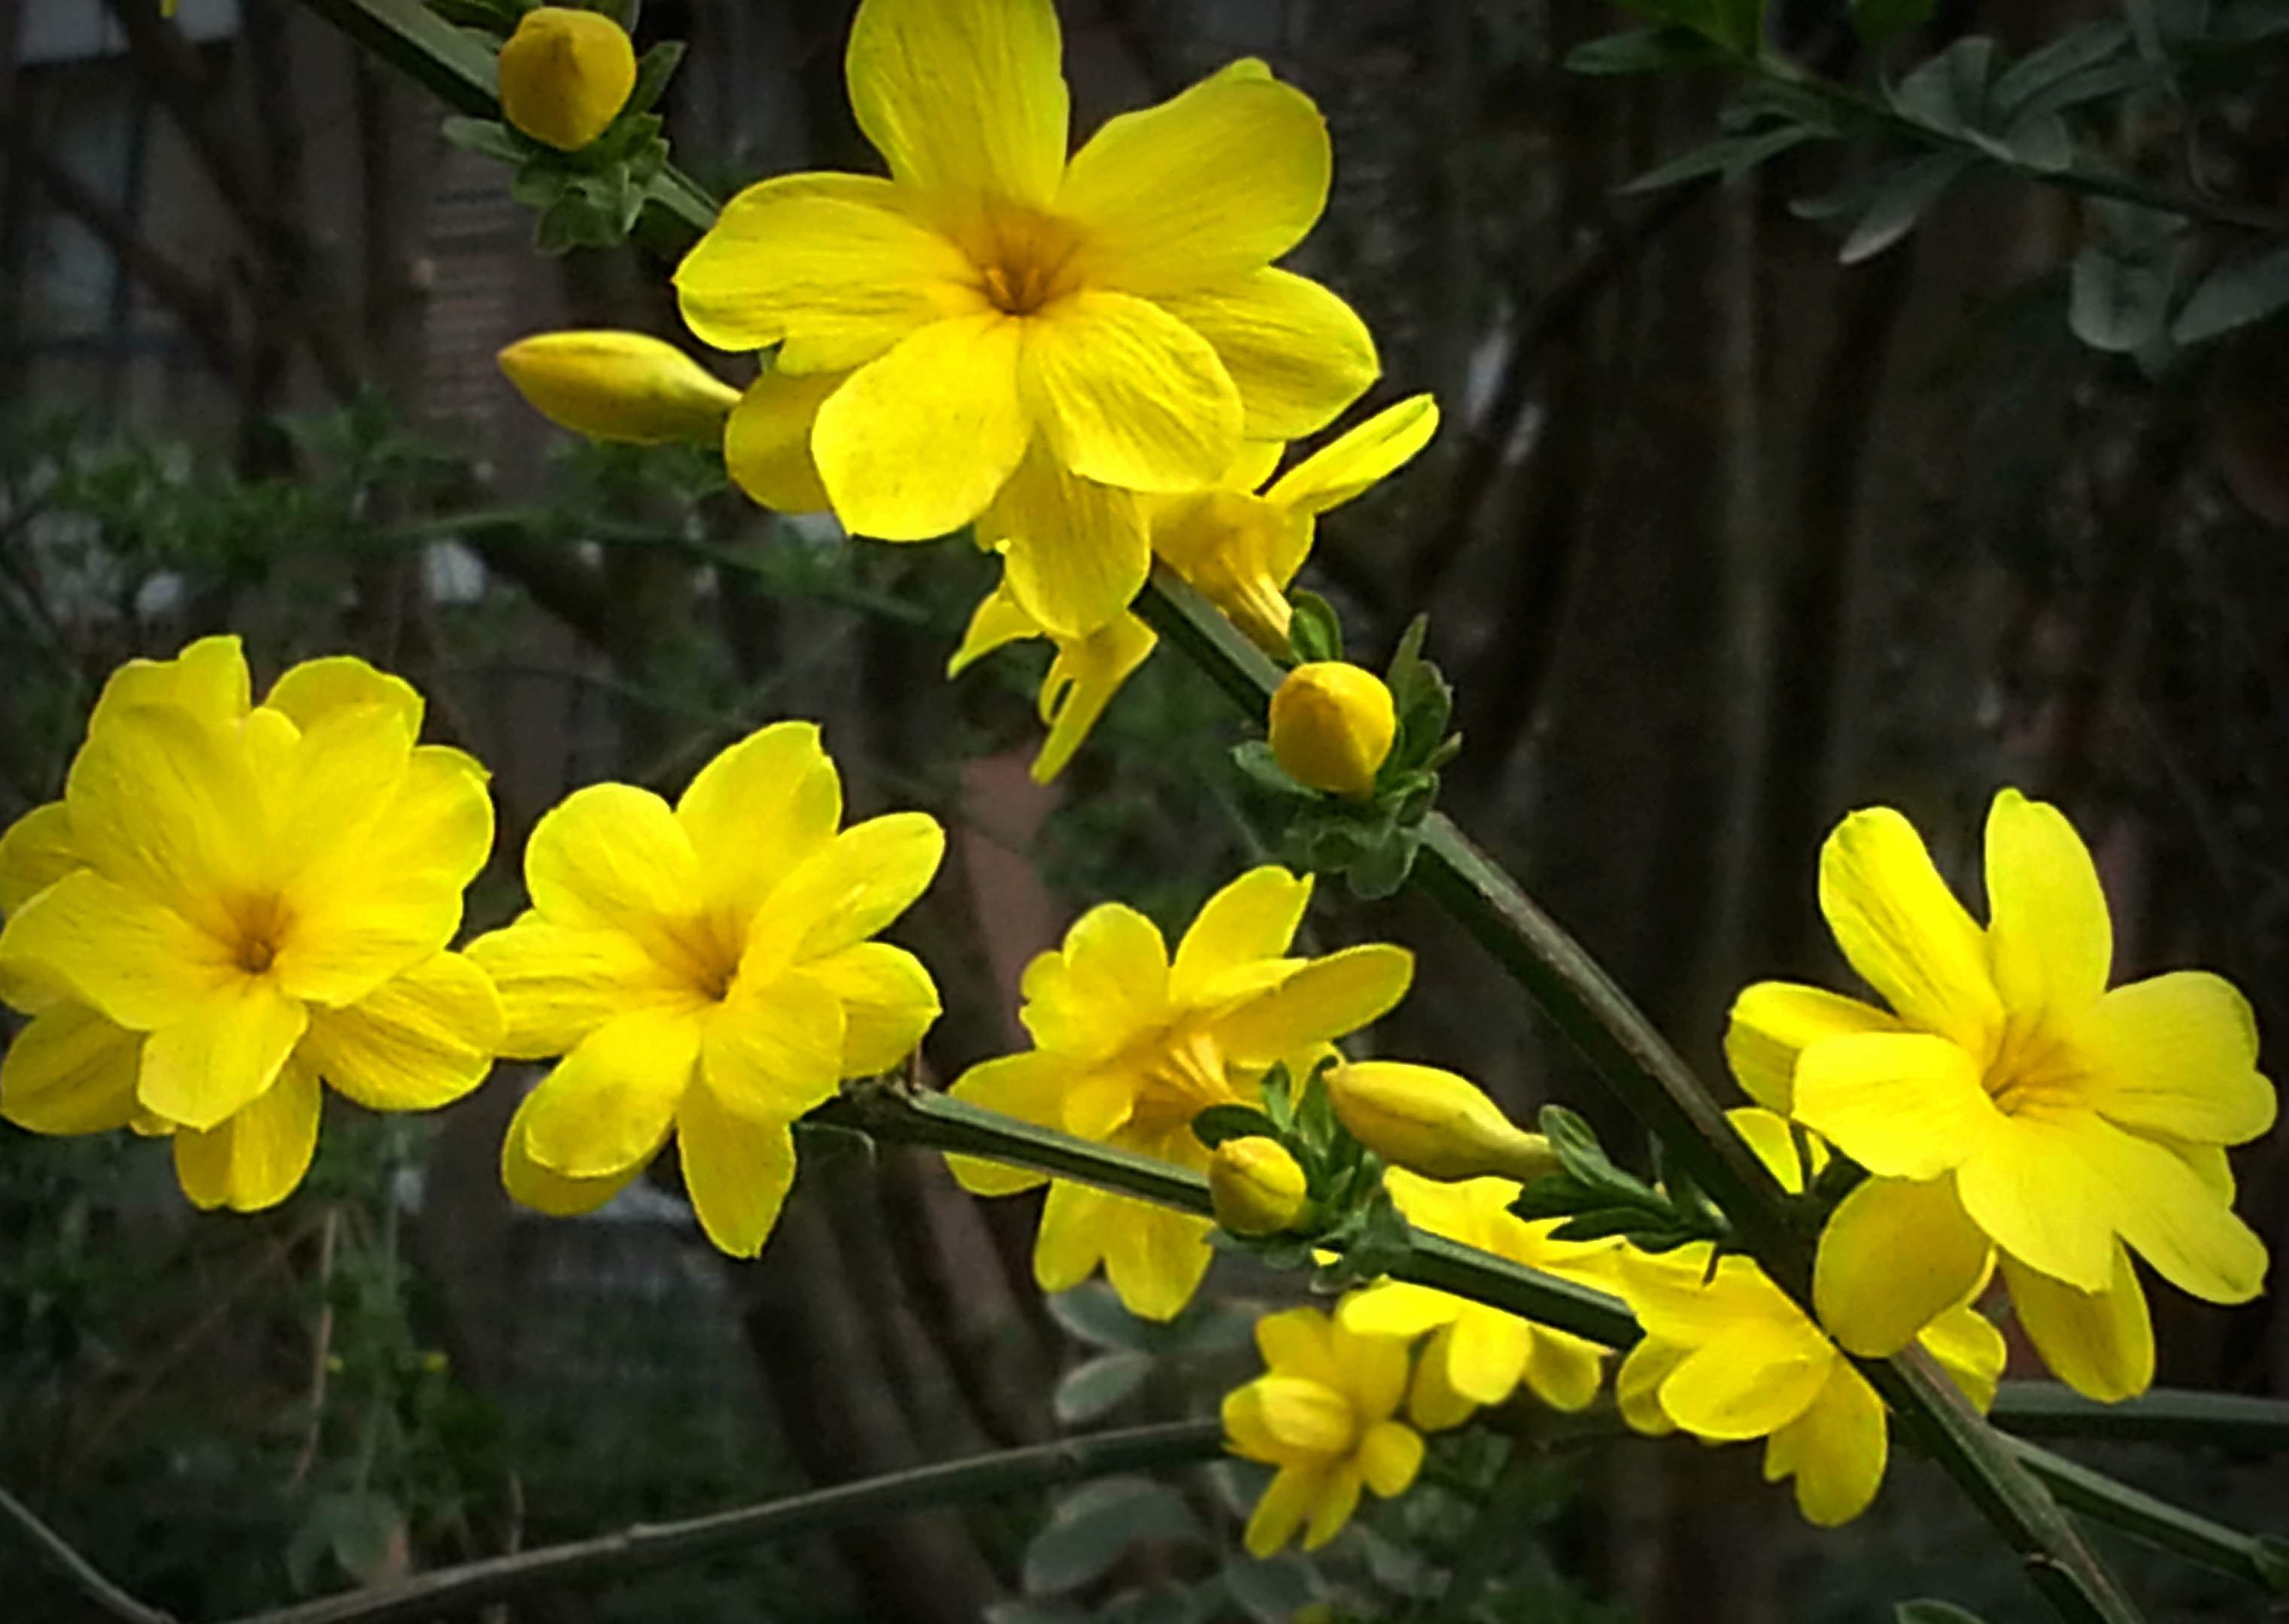 于是人们就常常将这些开黄花,枝条细长弯曲的灌木,统一称为"迎春".